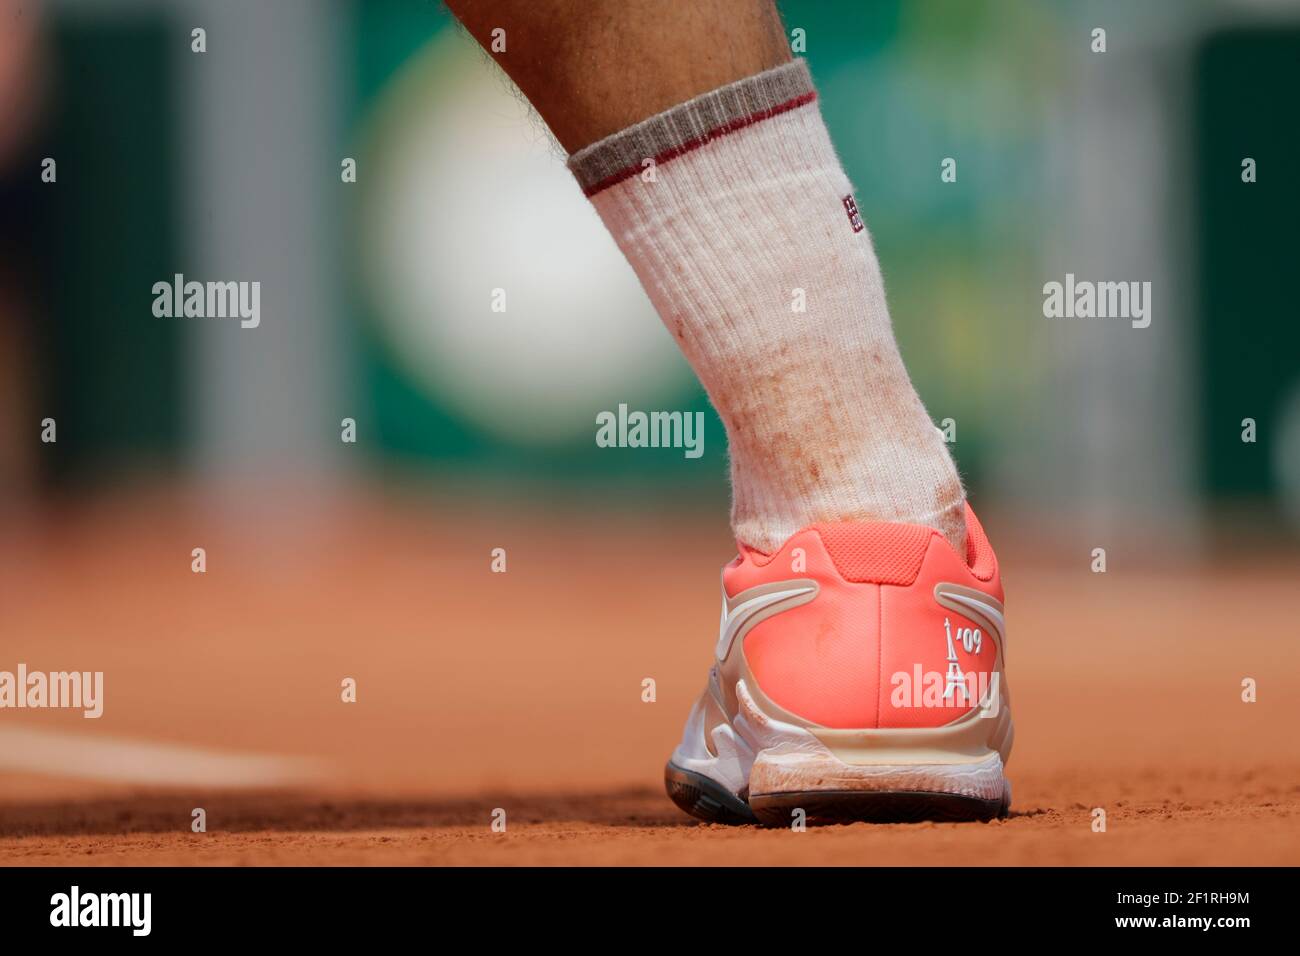 Chaussures Nike de Roger FEDERER (SUI) avec la Tour Eiffel 09 lors du  Roland-Garros 2019, Grand Chelem tennis Tournament, tirage pour Homme le 4  juin 2019 au stade Roland-Garros à Paris, France -